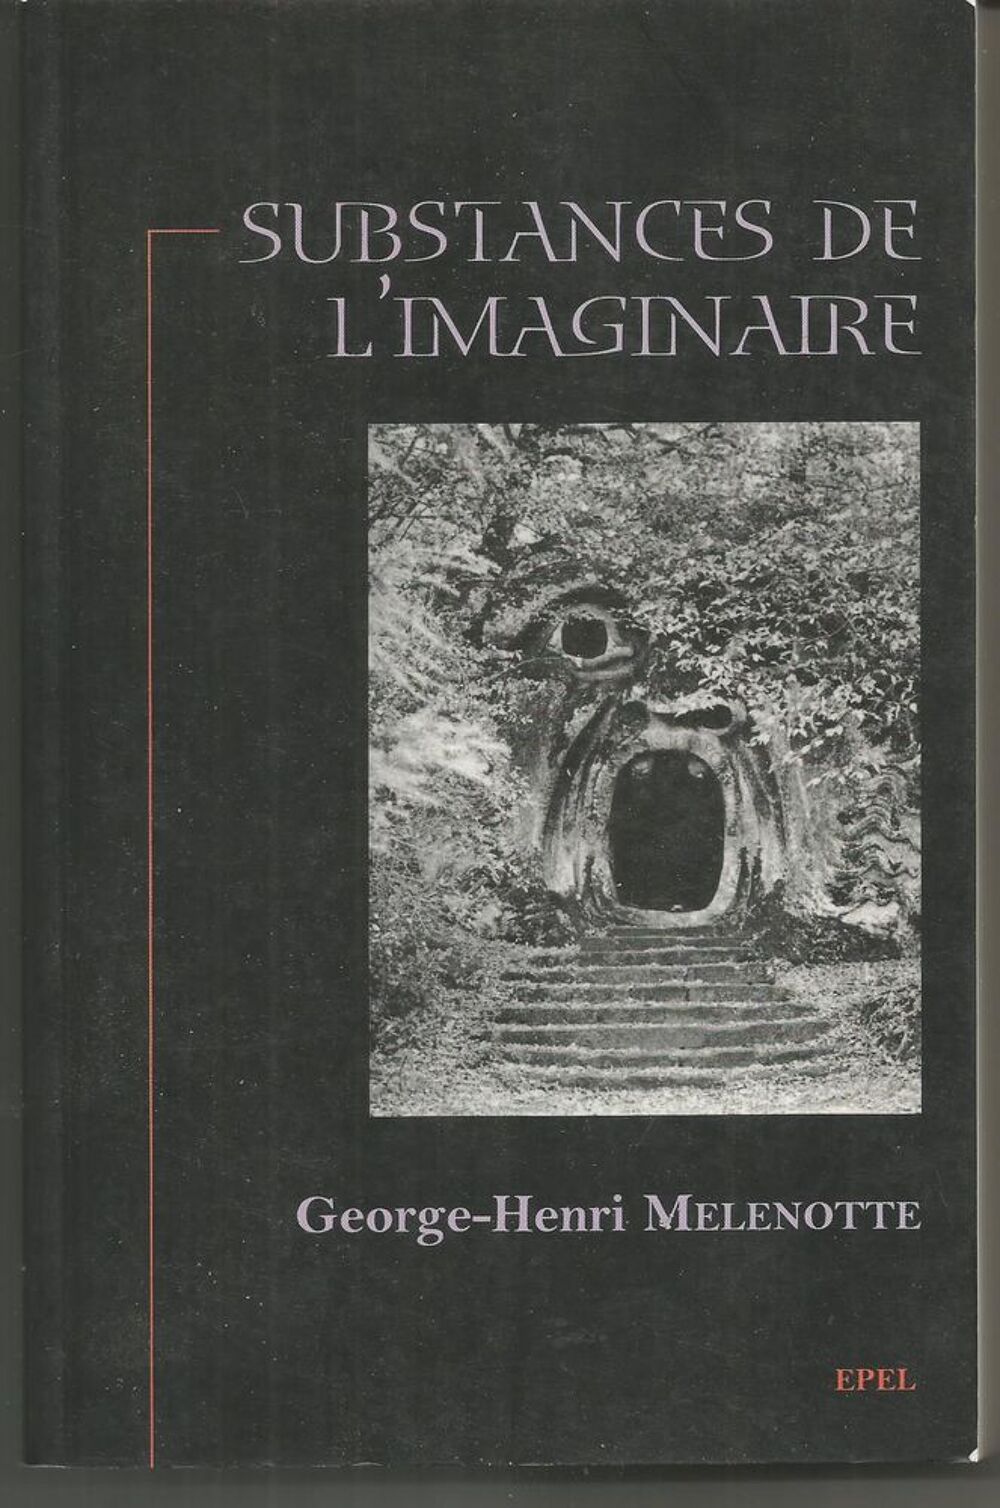 George-Henri MELENOTTE : substances de l'imaginaire Livres et BD